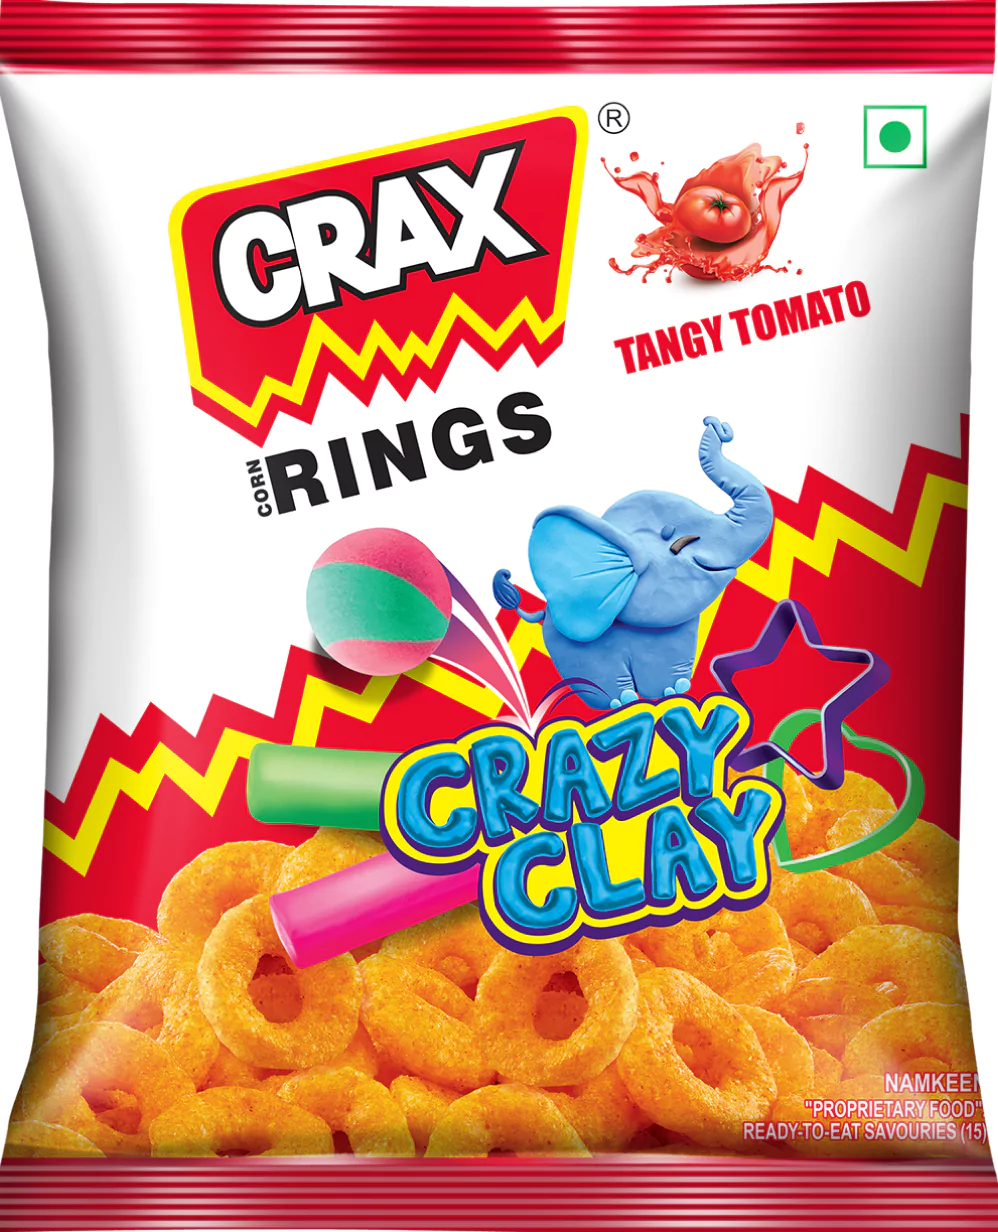 Crax Curls| Tangy Shop – TANGY SHOP